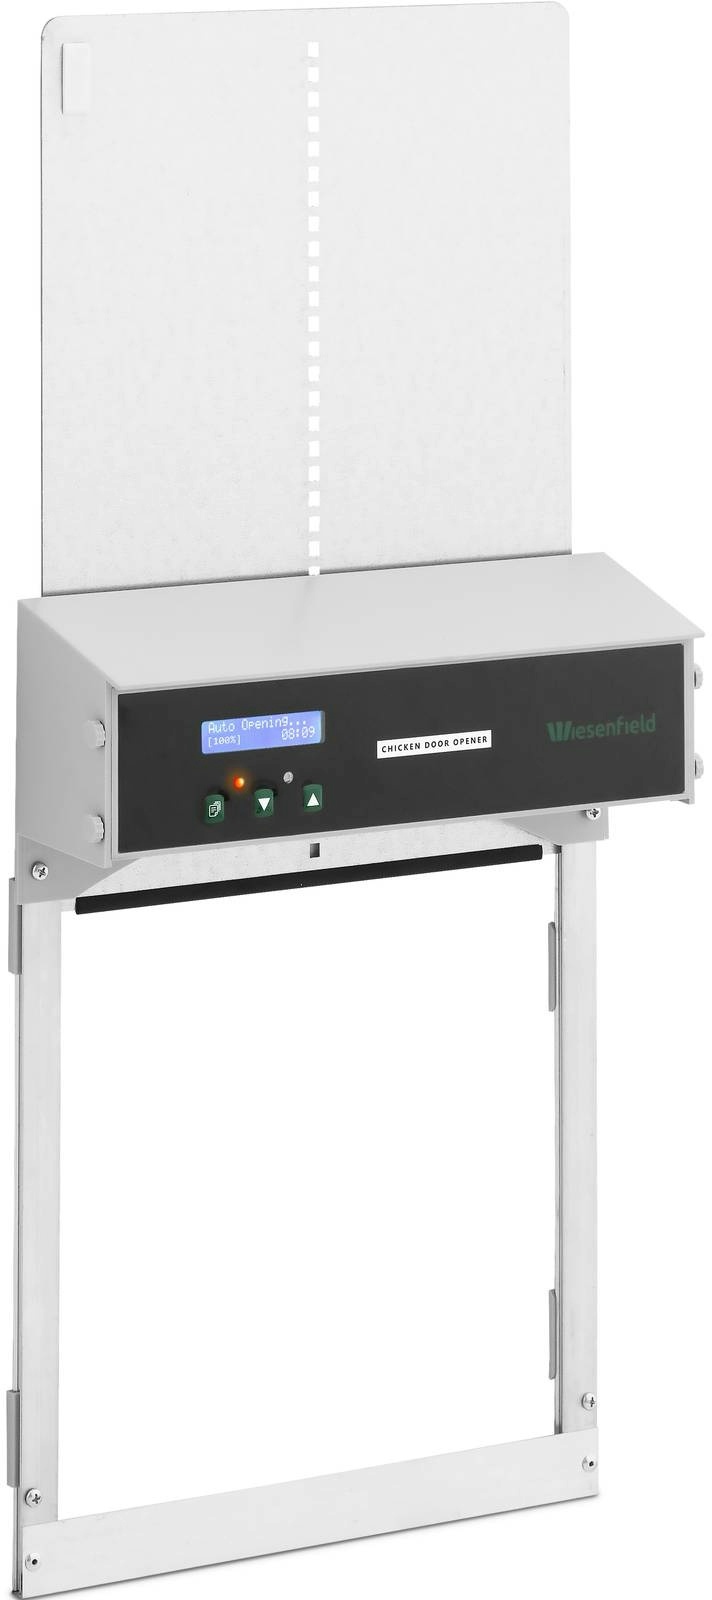 Wiesenfield Automatische Hühnerklappe - Timer / Lichtsensor - batteriebetrieben - automatische Verriegelung - Antiblockierfunktion